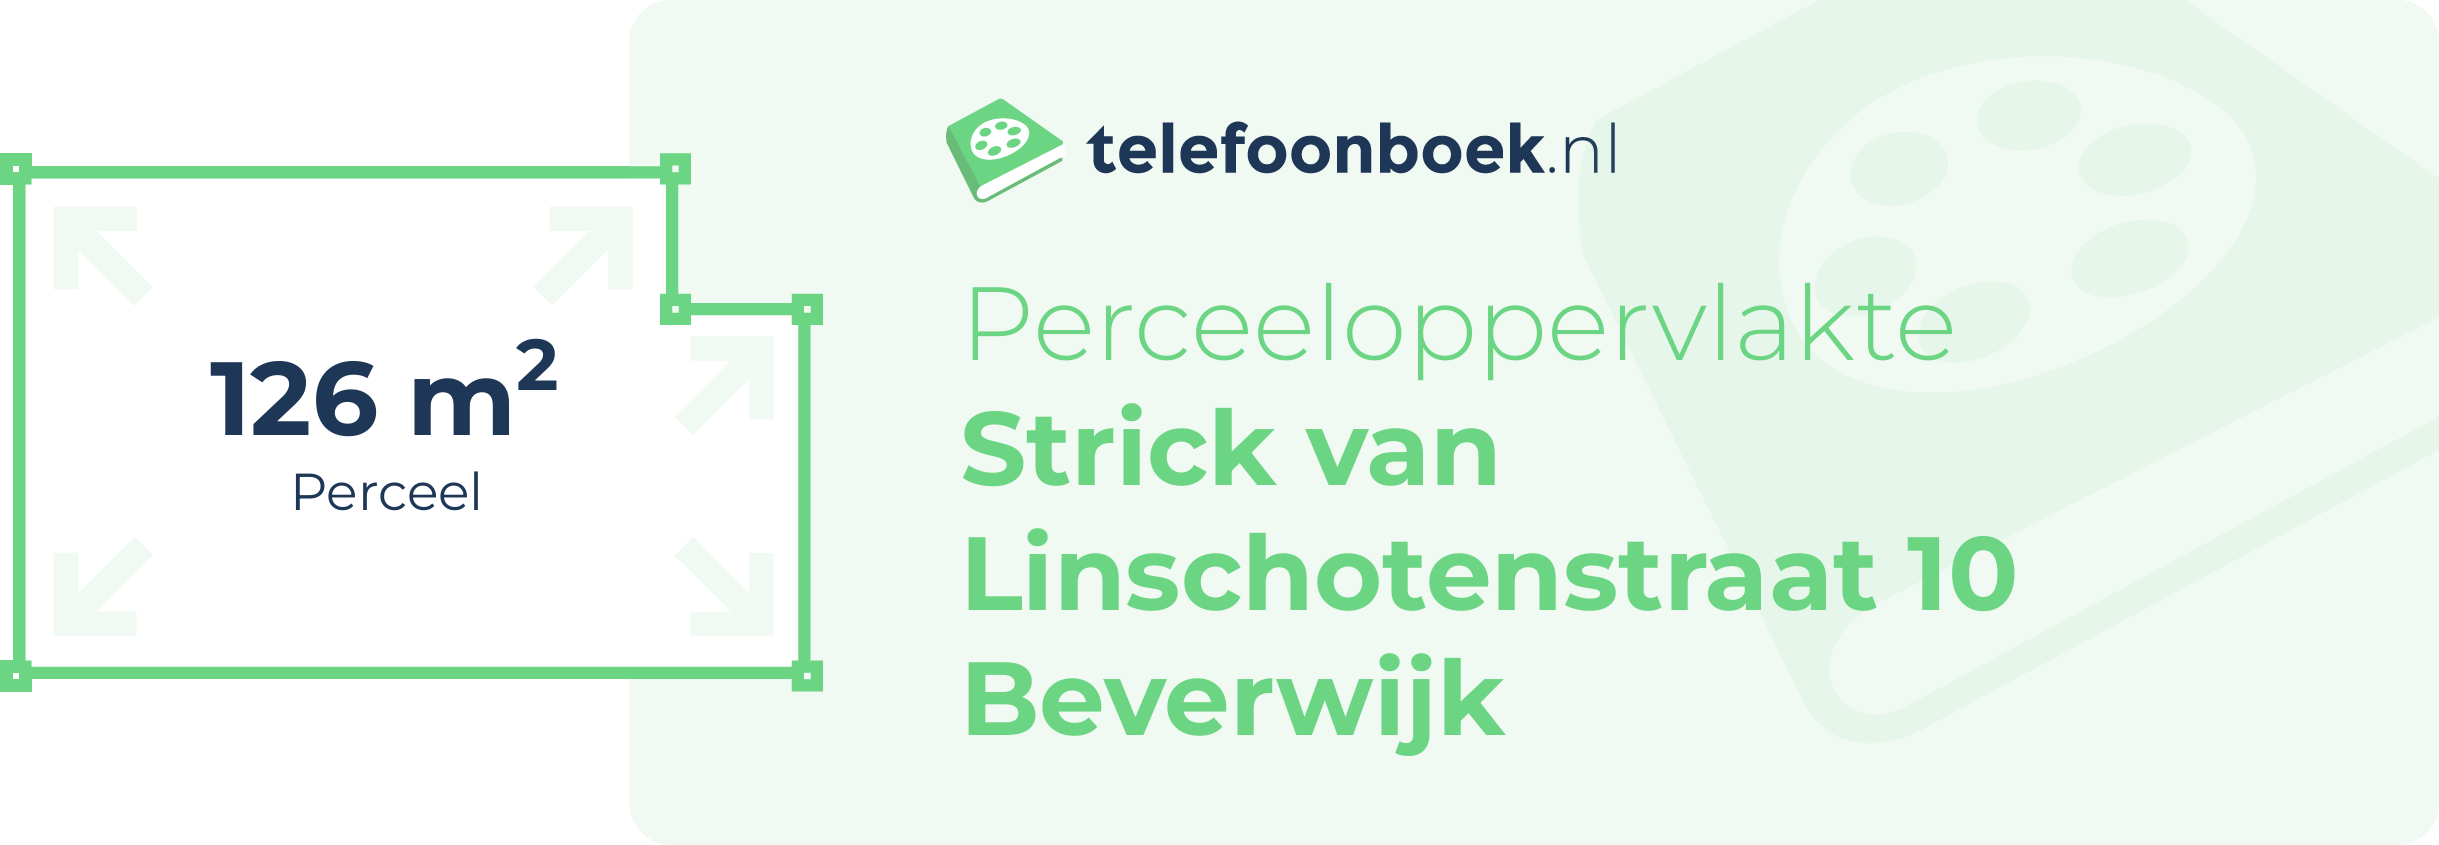 Perceeloppervlakte Strick Van Linschotenstraat 10 Beverwijk